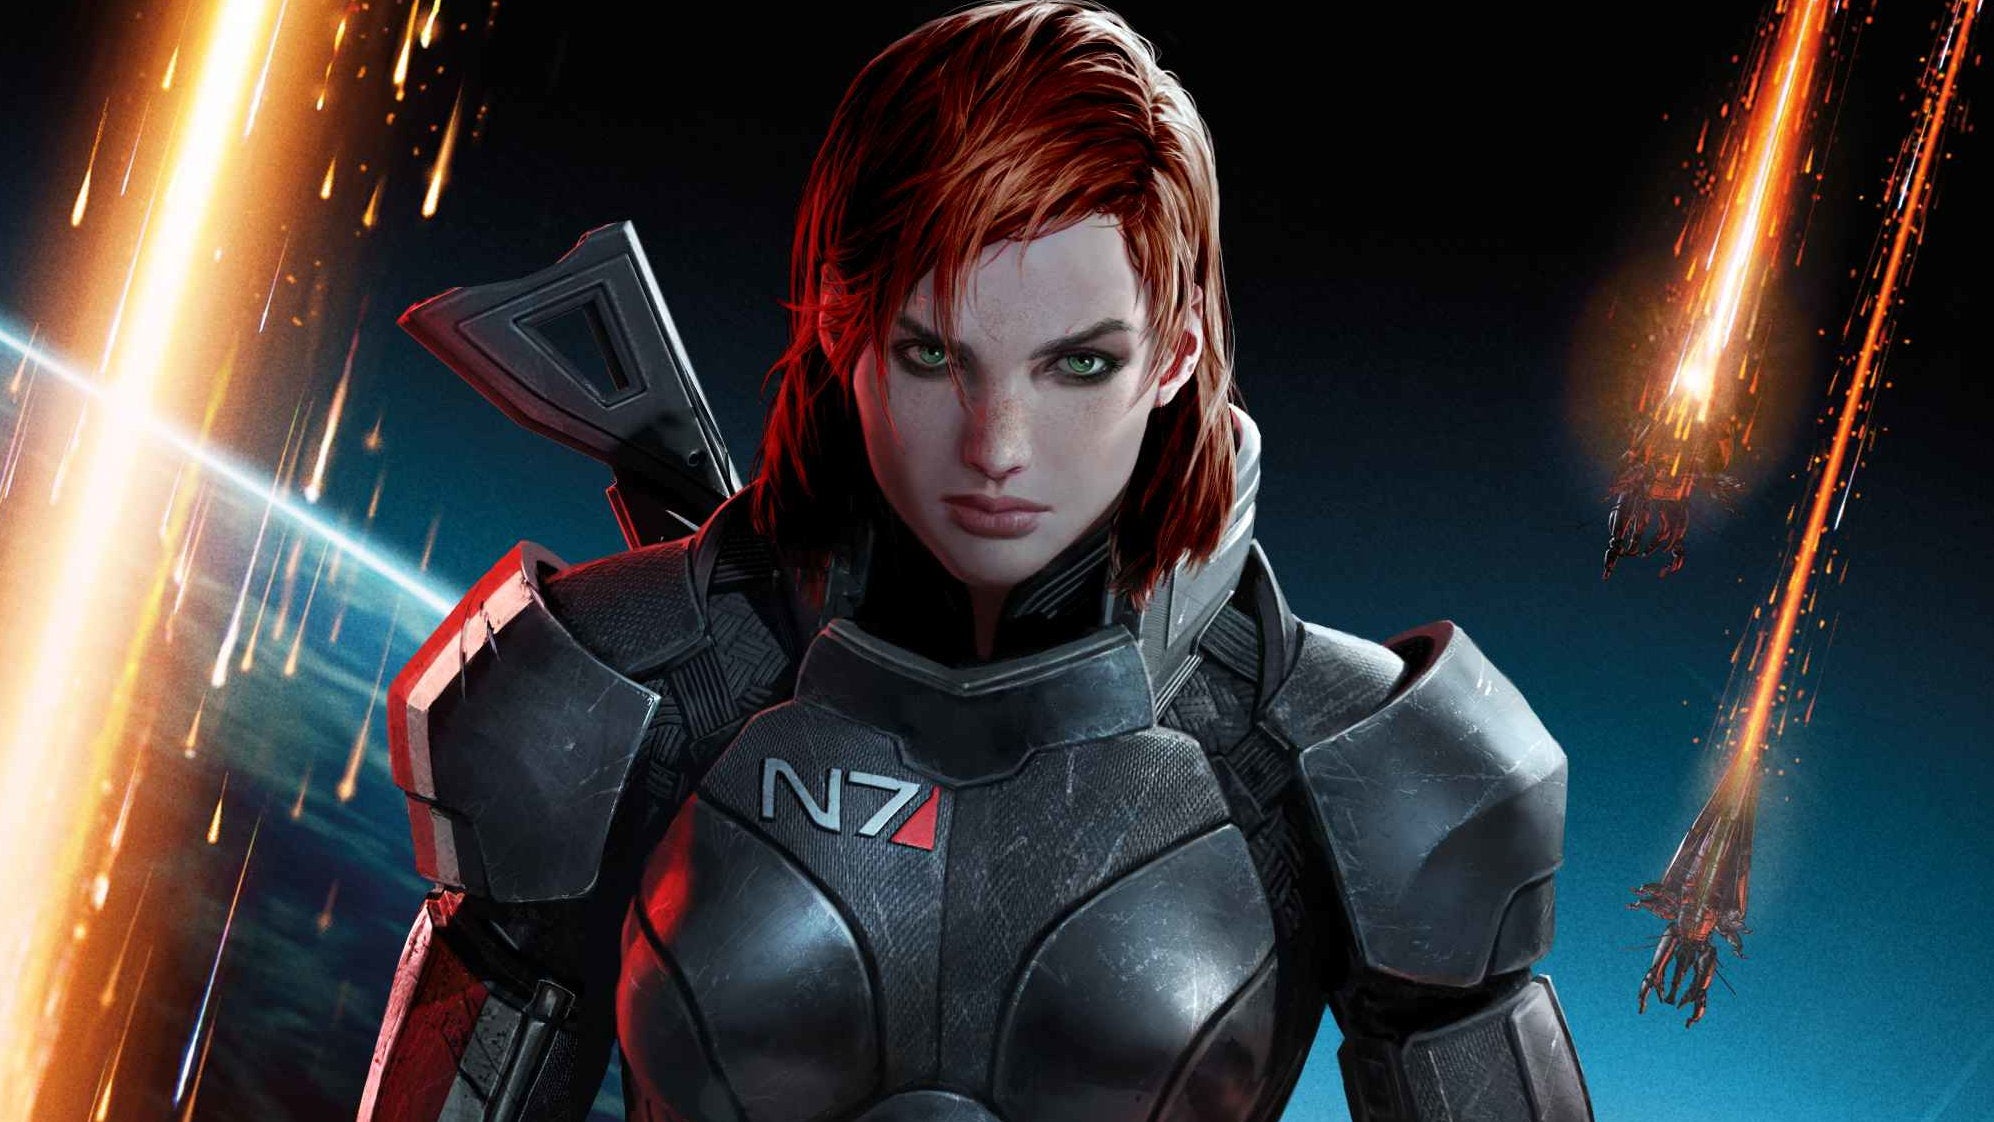 Bilder zu Mass Effect: Von Han Solo inspirierter Ableger war vor Teil 2 geplant